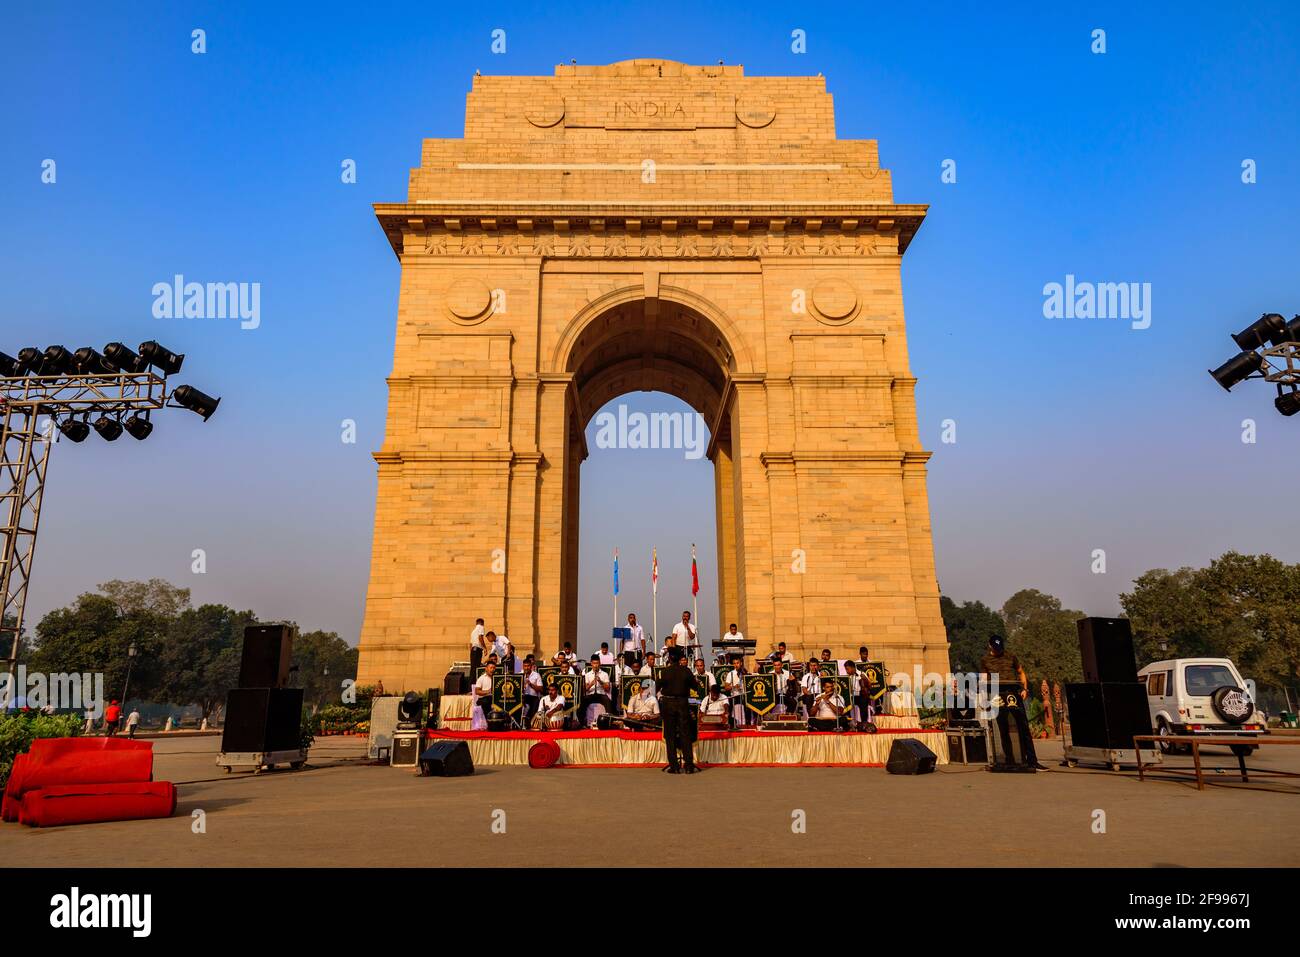 India Gate, New Delhi, India, ottobre-2018: Soldati dell'esercito territoriale indiano si esibisce a India Gate un monumento cerimoniale mentre prendono parte a rehe Foto Stock